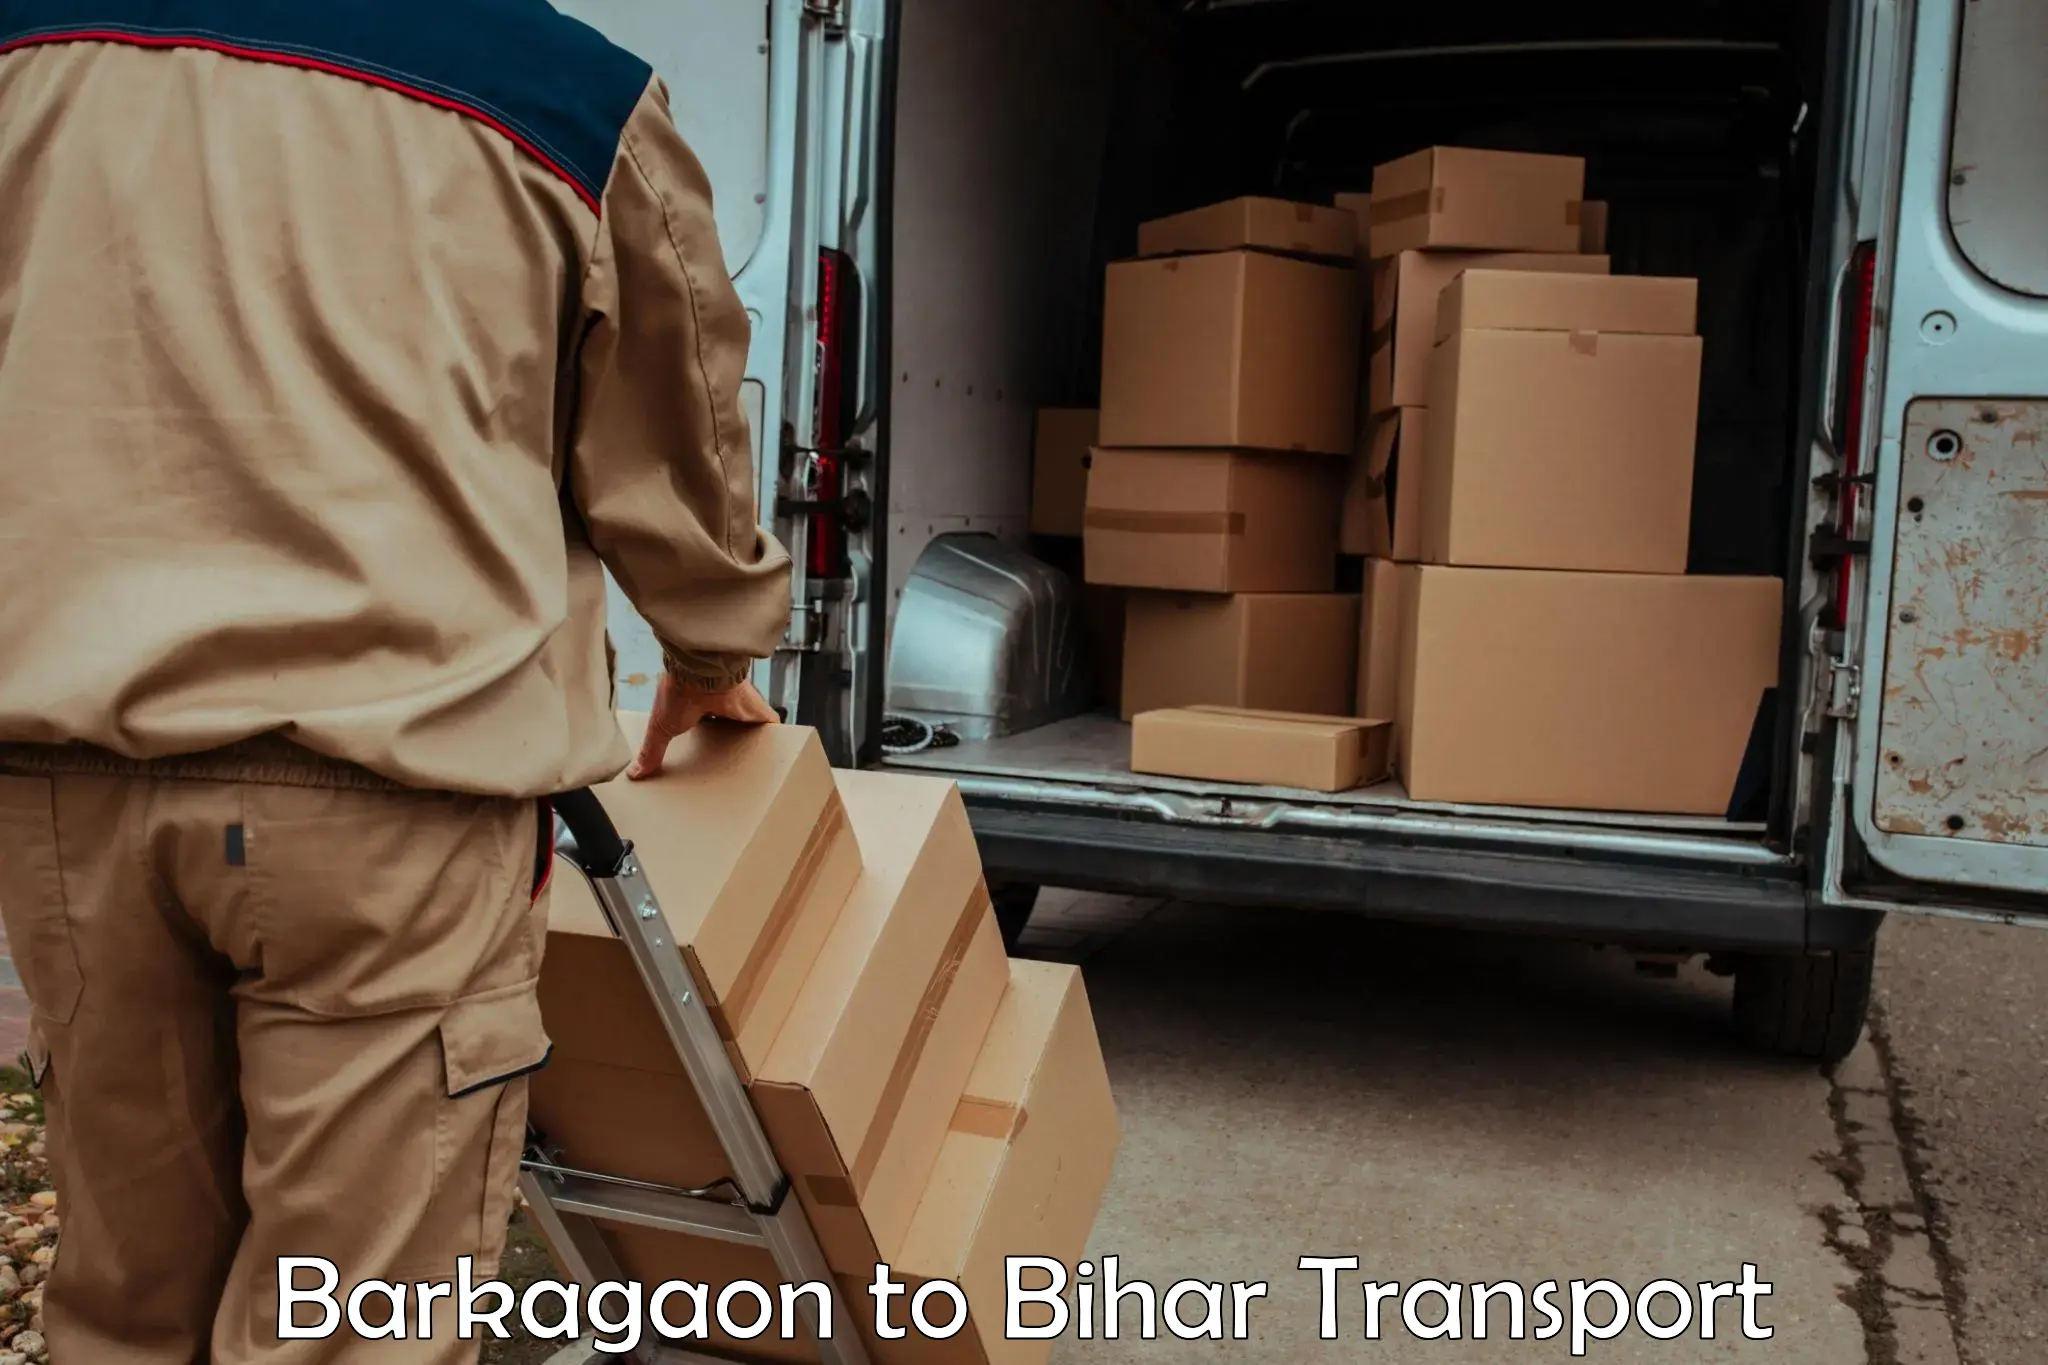 Online transport service Barkagaon to Kamtaul